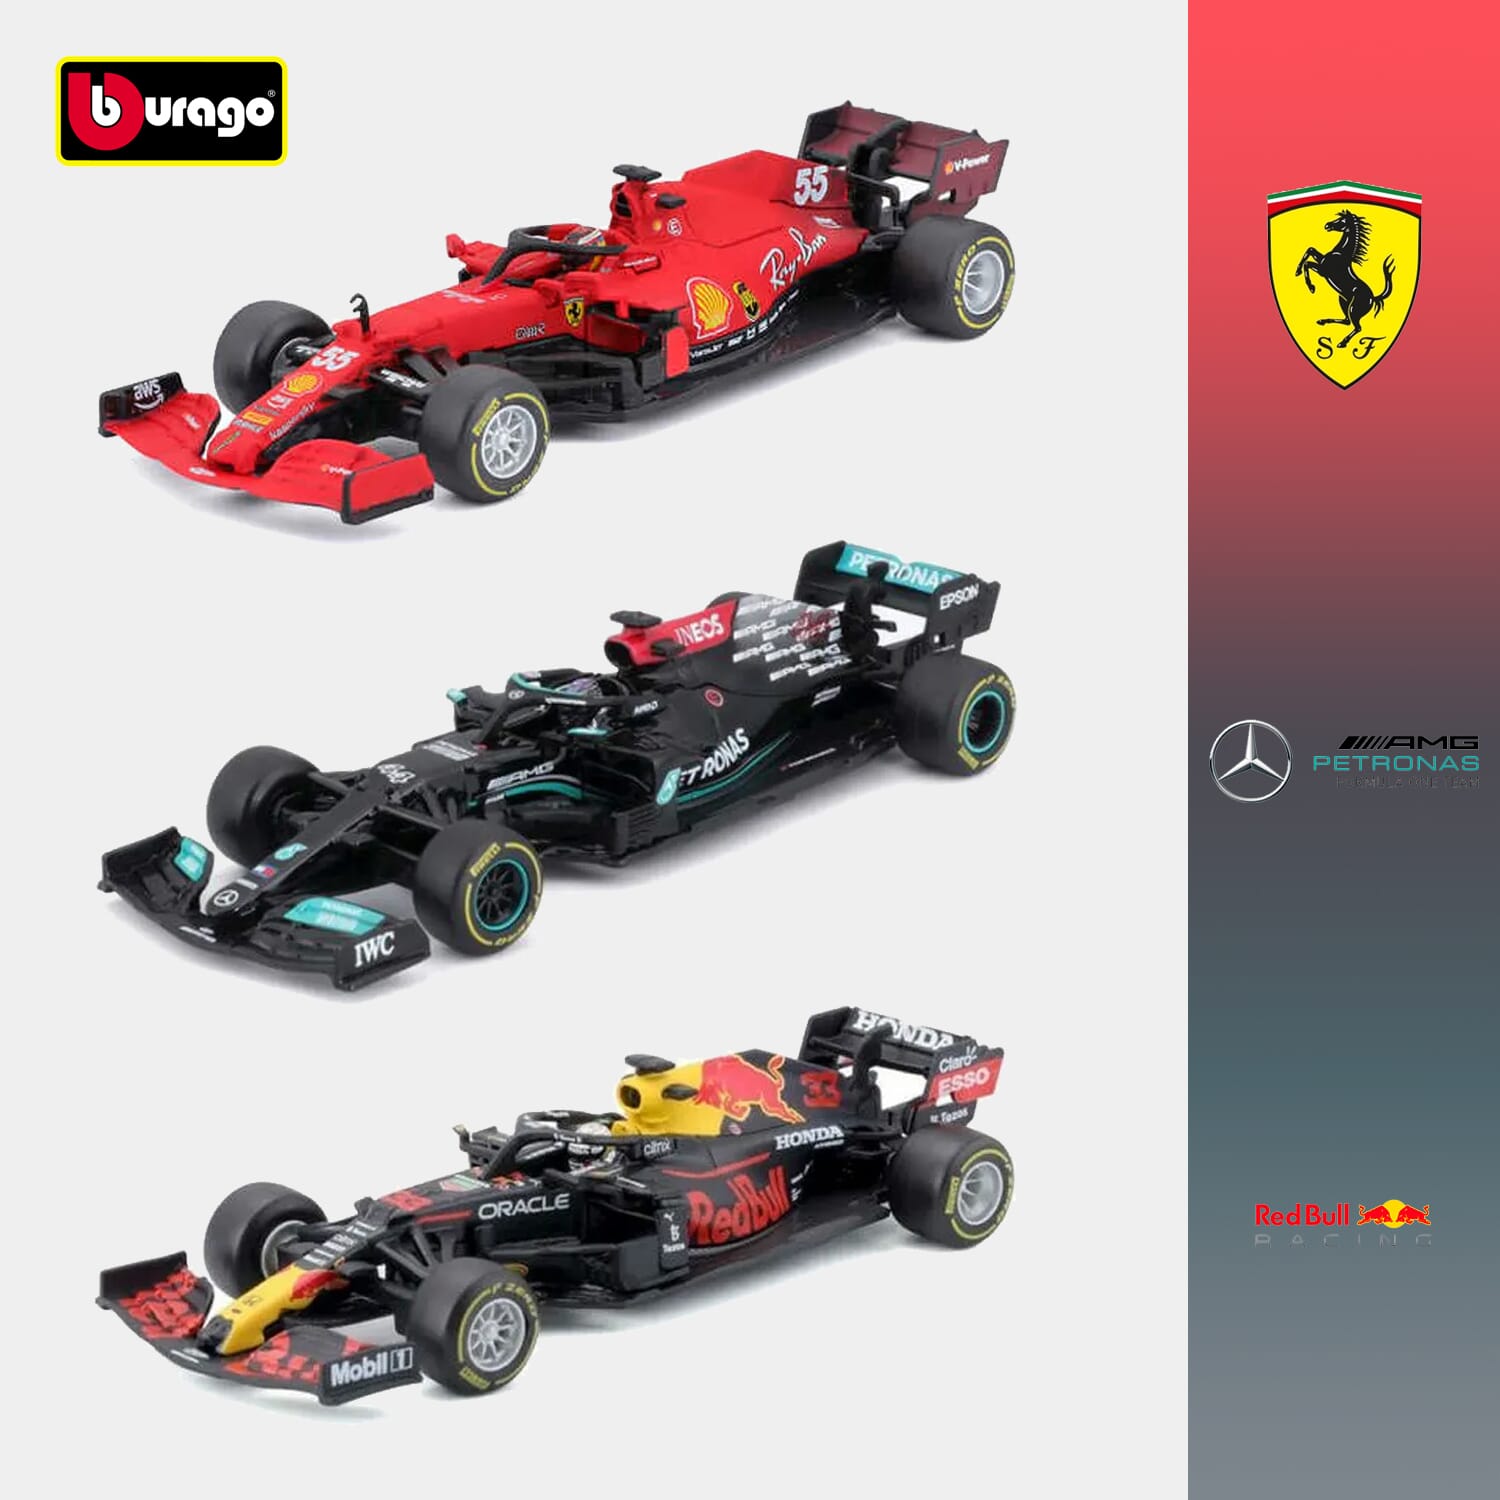 Bburago F1 Mercedes Red Bull Ferrari Verstappen Hamilton Sainz Diecast Model Racecar